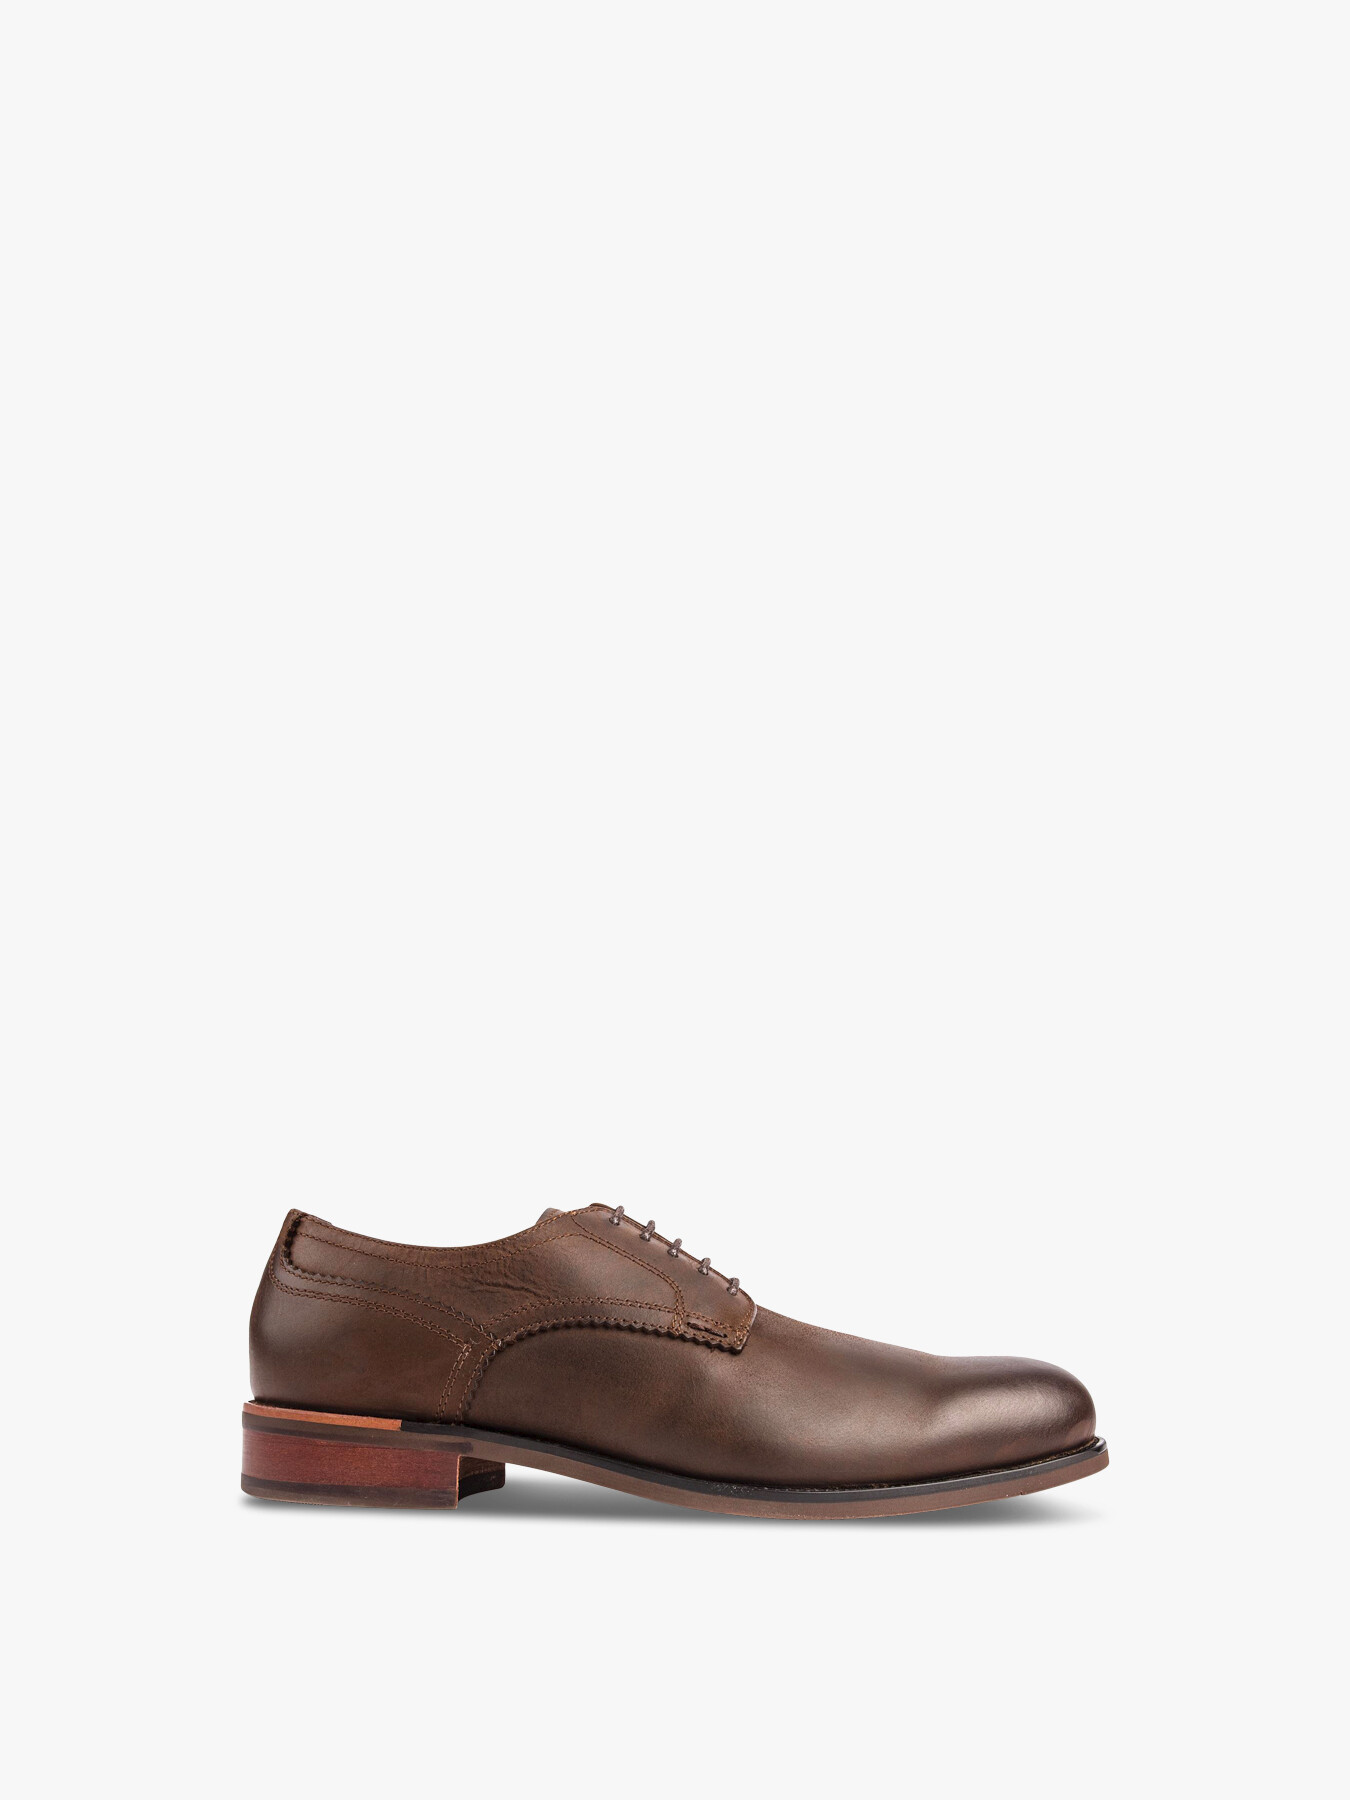 Sole Moore Plain Toe Shoes Brown